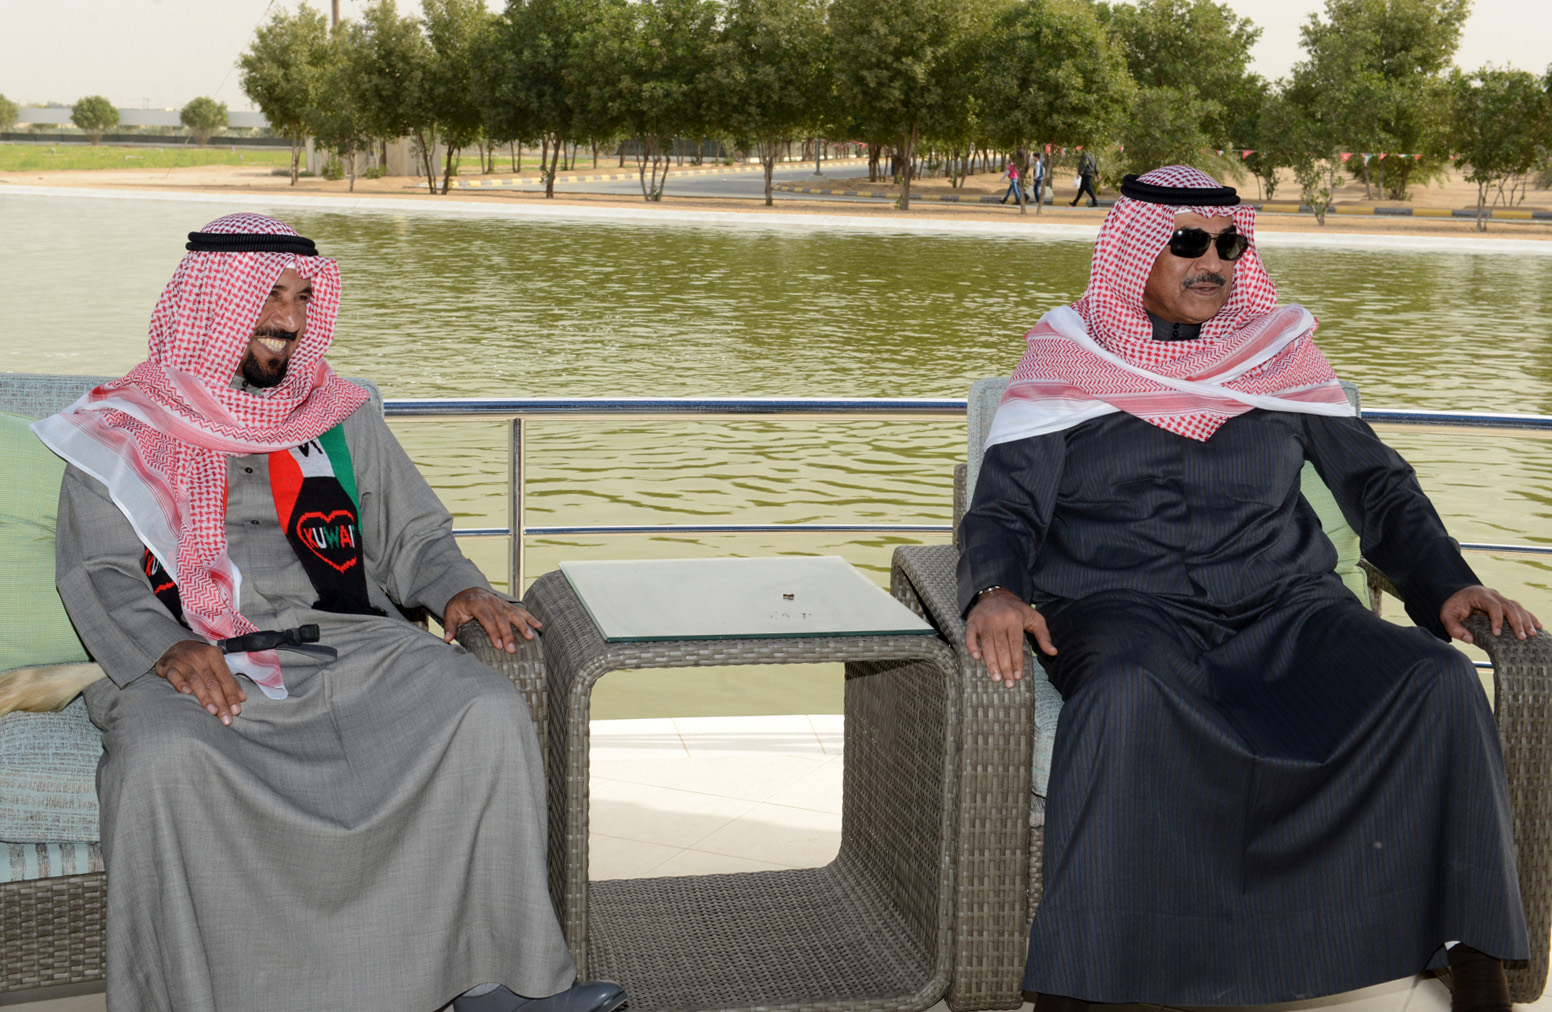 First Deputy Prime Minister and Foreign Minister Sheikh Sabah Al-Khaled Al-Hamad Al-Sabah with Sheikh Ali Al-Jaber Al-Ahmad Al-Sabah